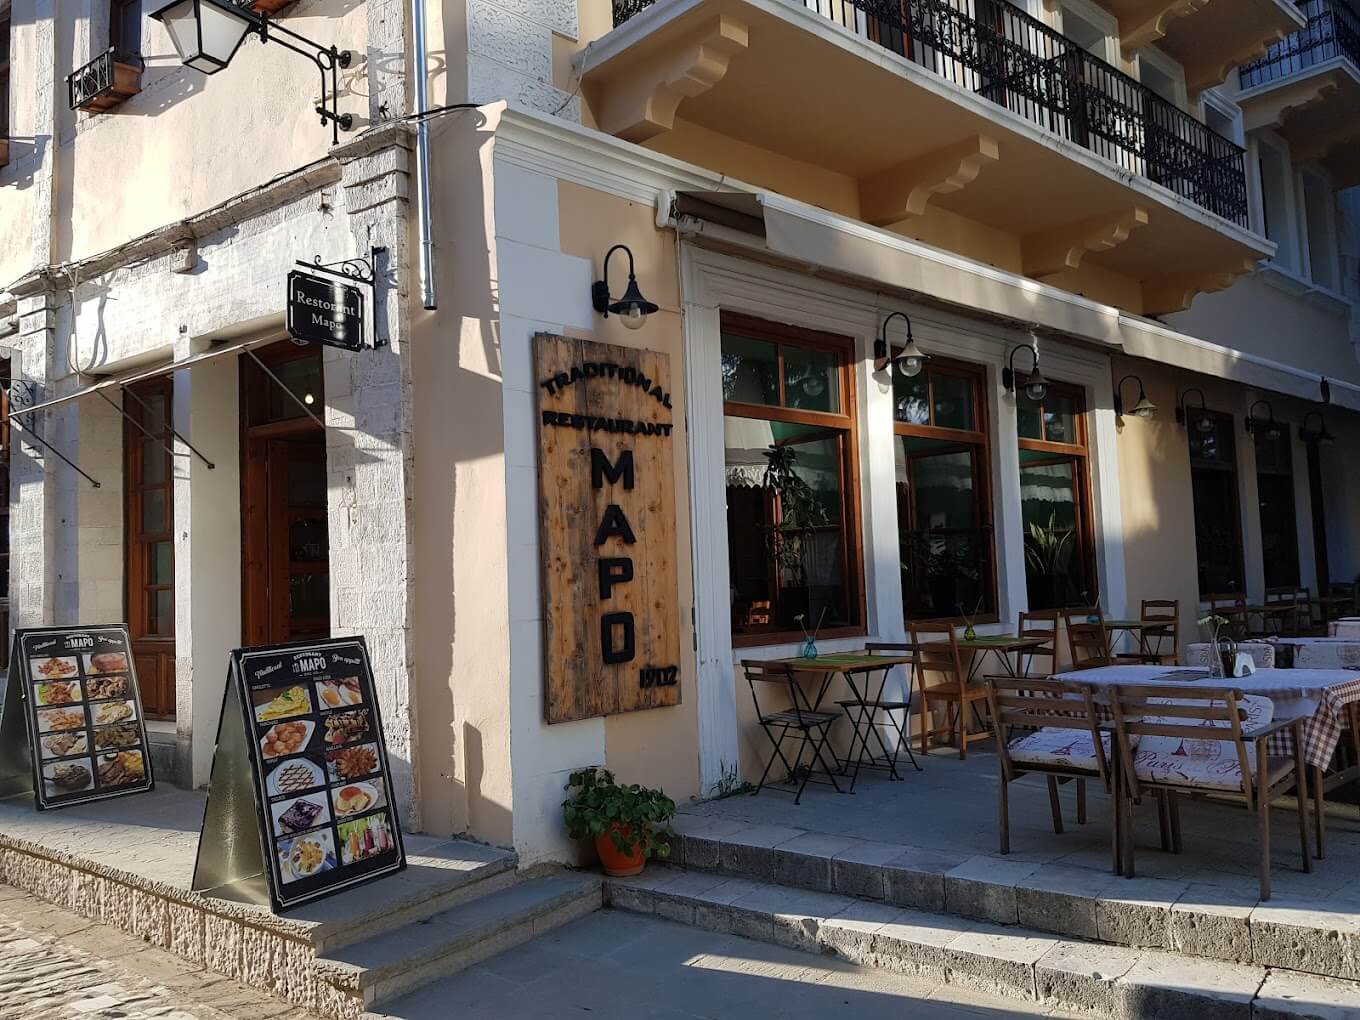 Restorant Mapo është një restorant i vendosur në Pazarin e bukur të Gjirokastrës.